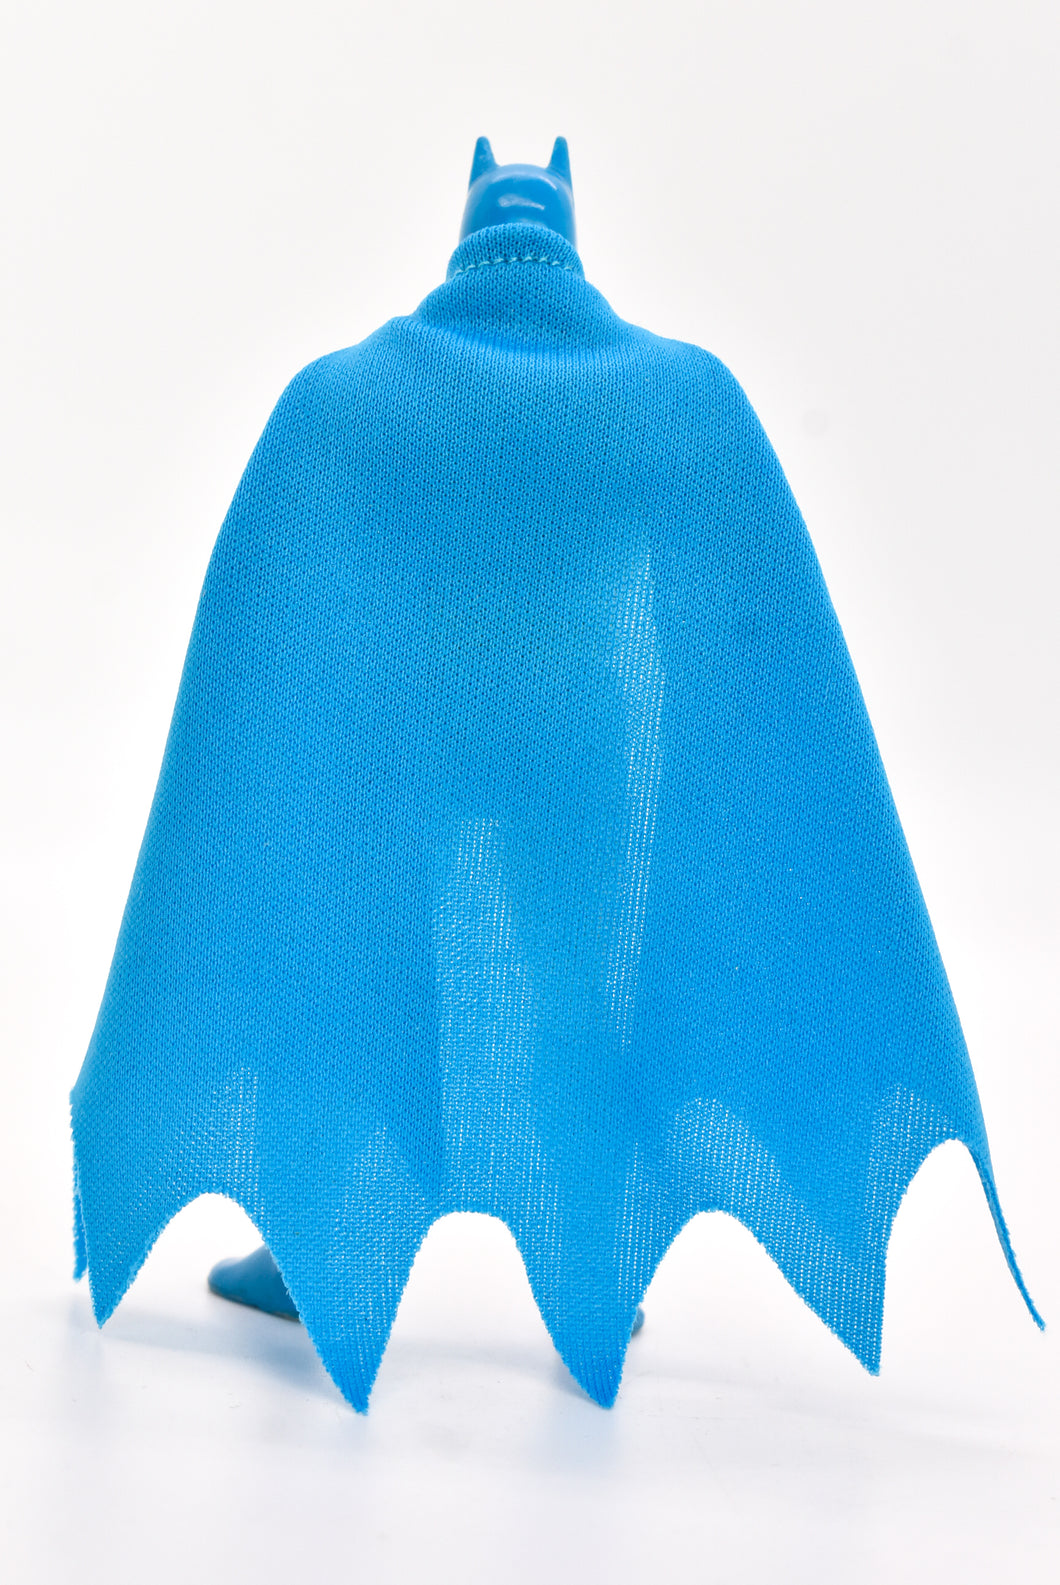 Super Powers Batman Cape Long Version